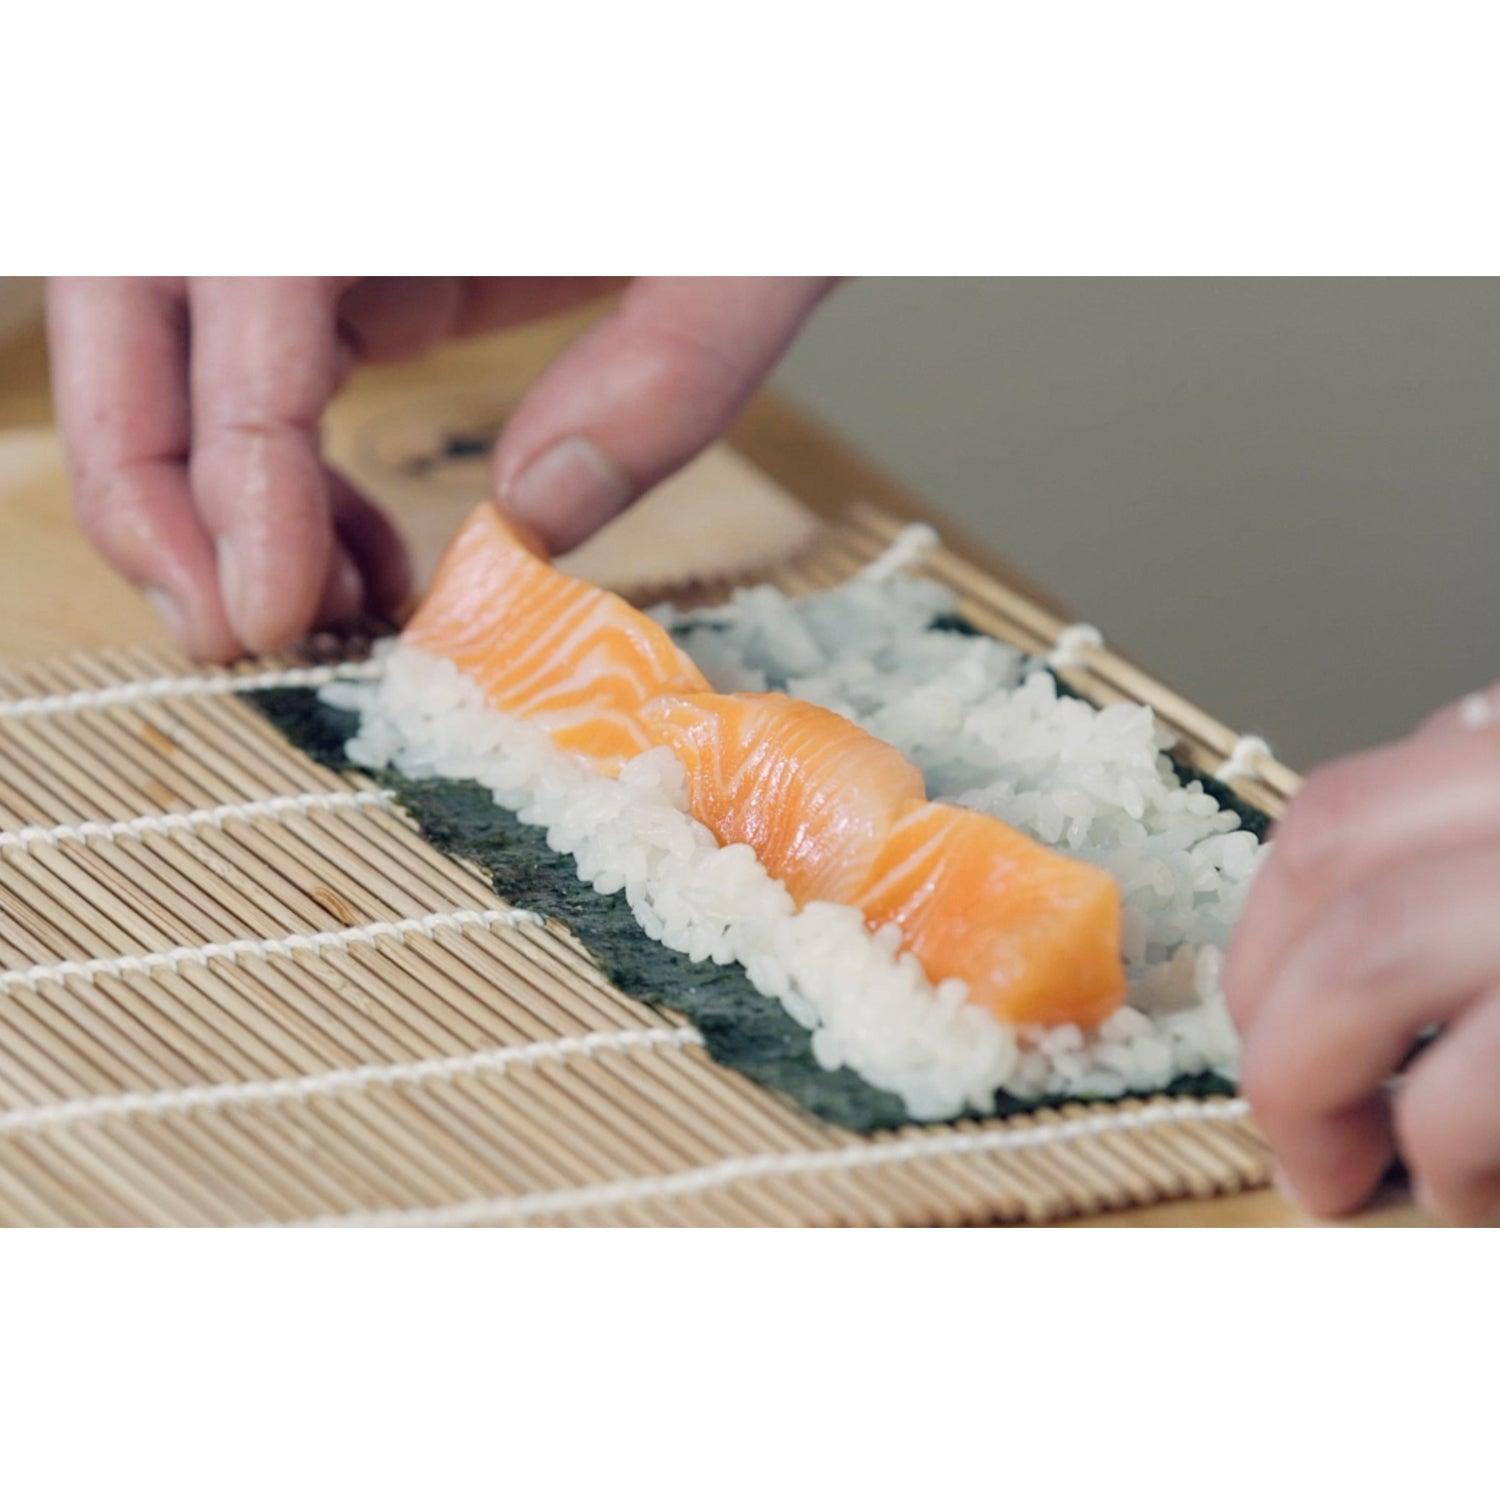  aya Sushi Roll Making [Kit] 2, Online Video Tutorials